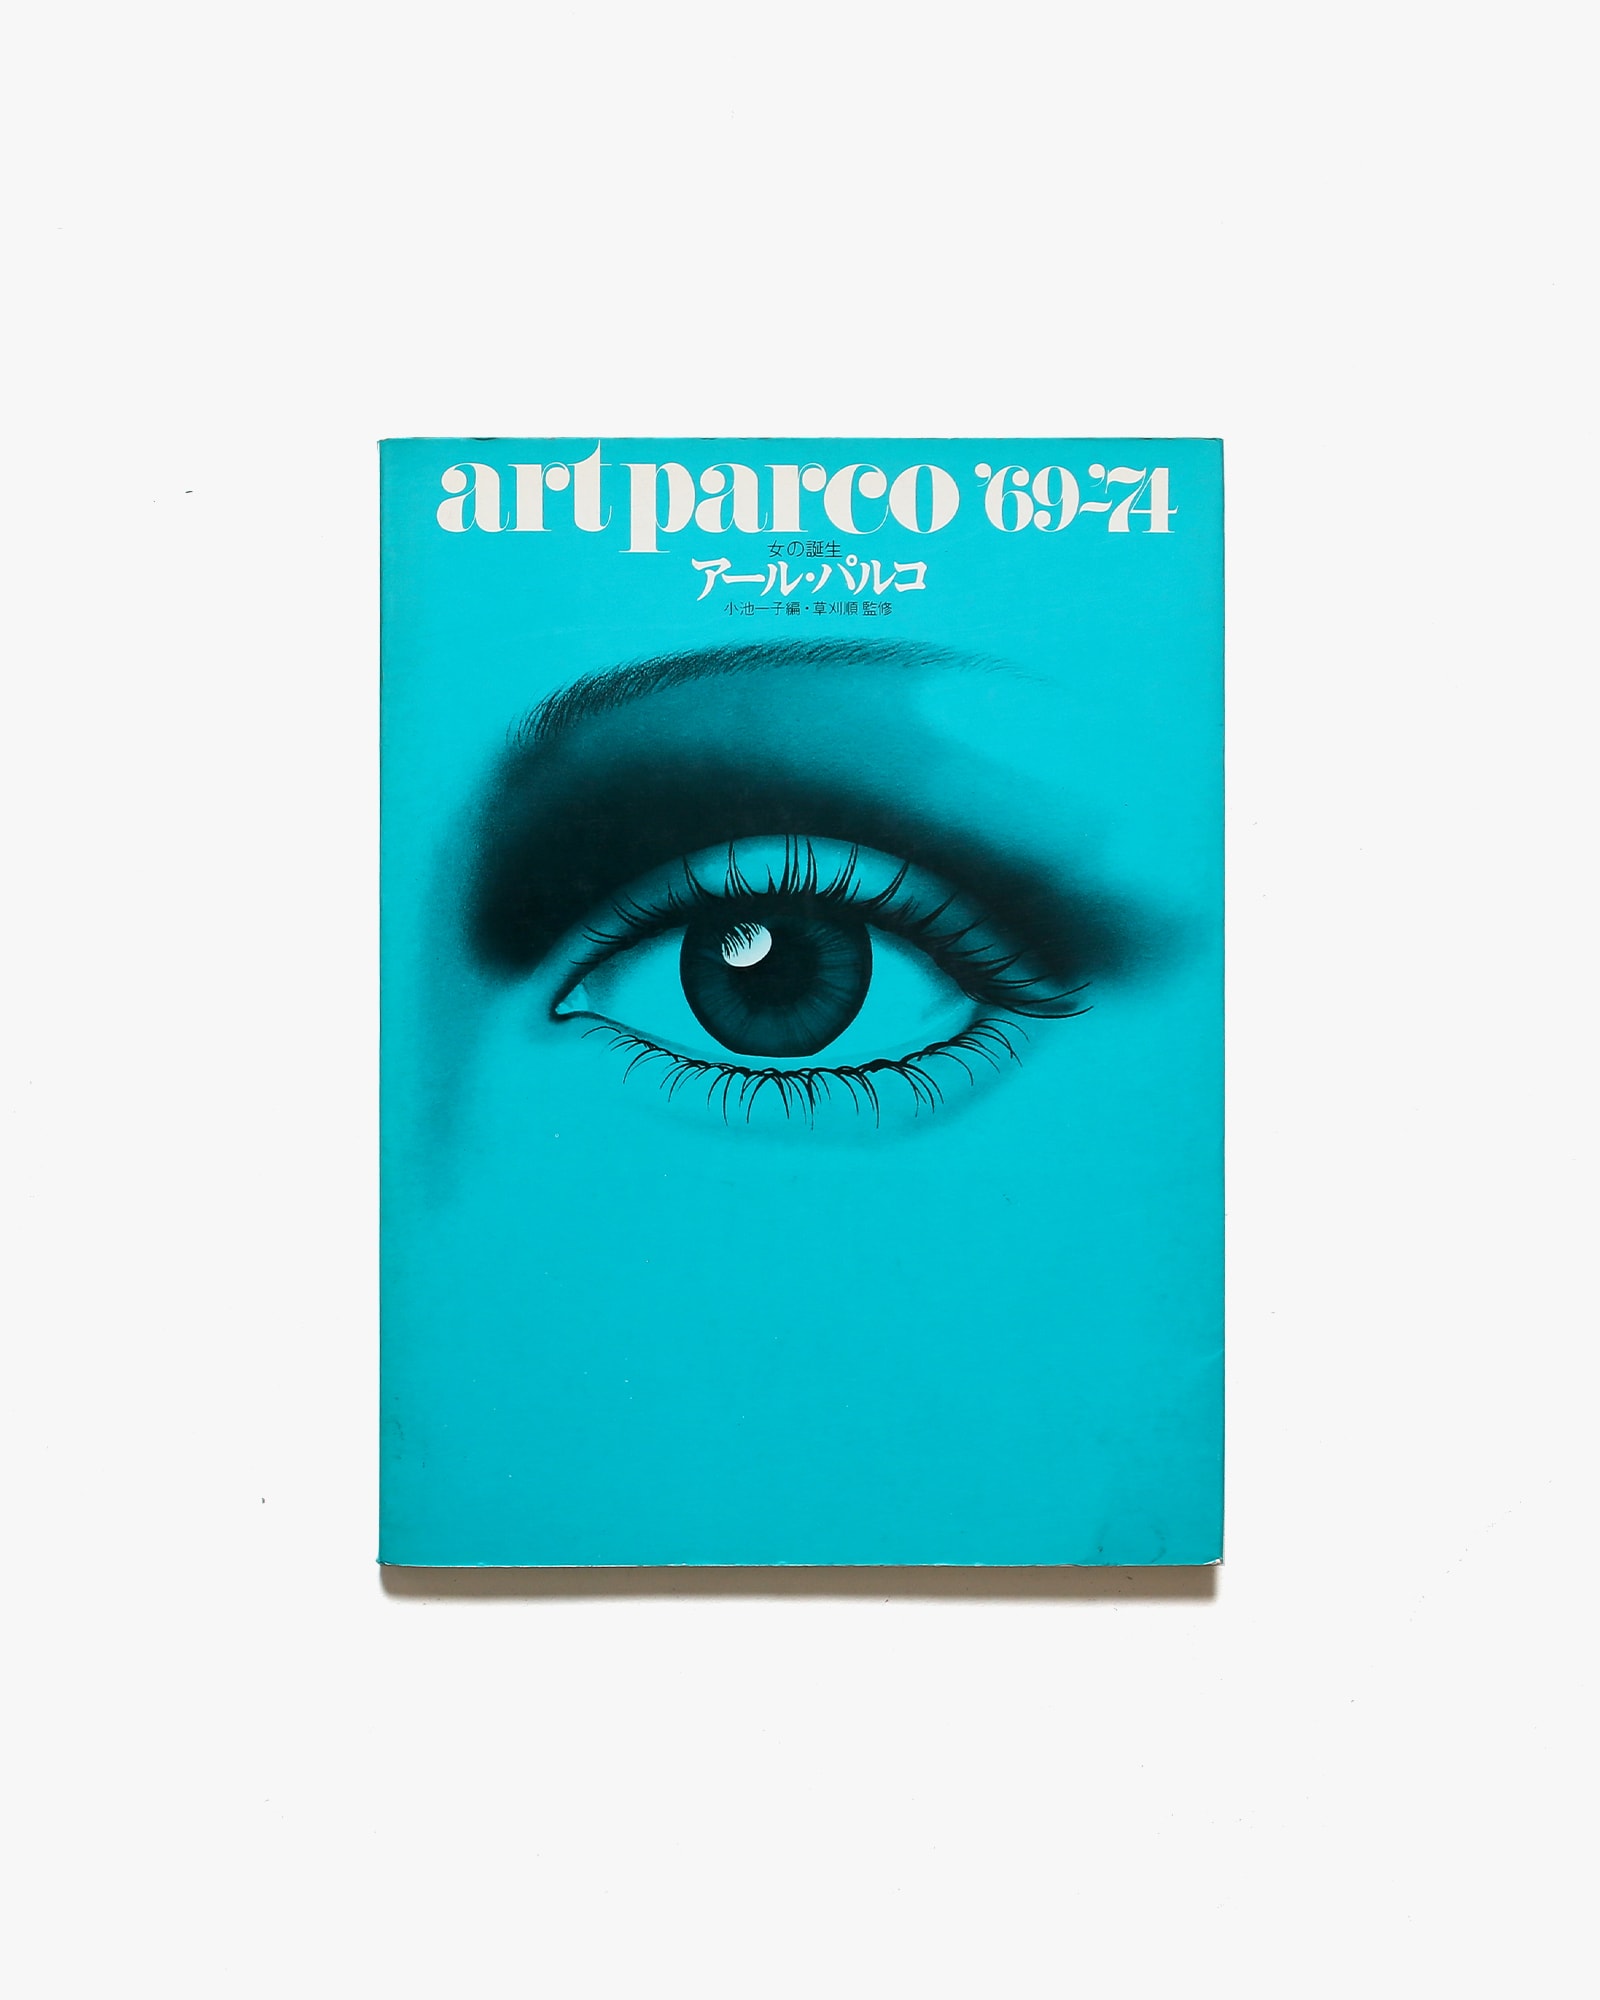 通販大得価【希少】アール・パルコ 女の誕生 PARCO 69-74 アート・デザイン・音楽